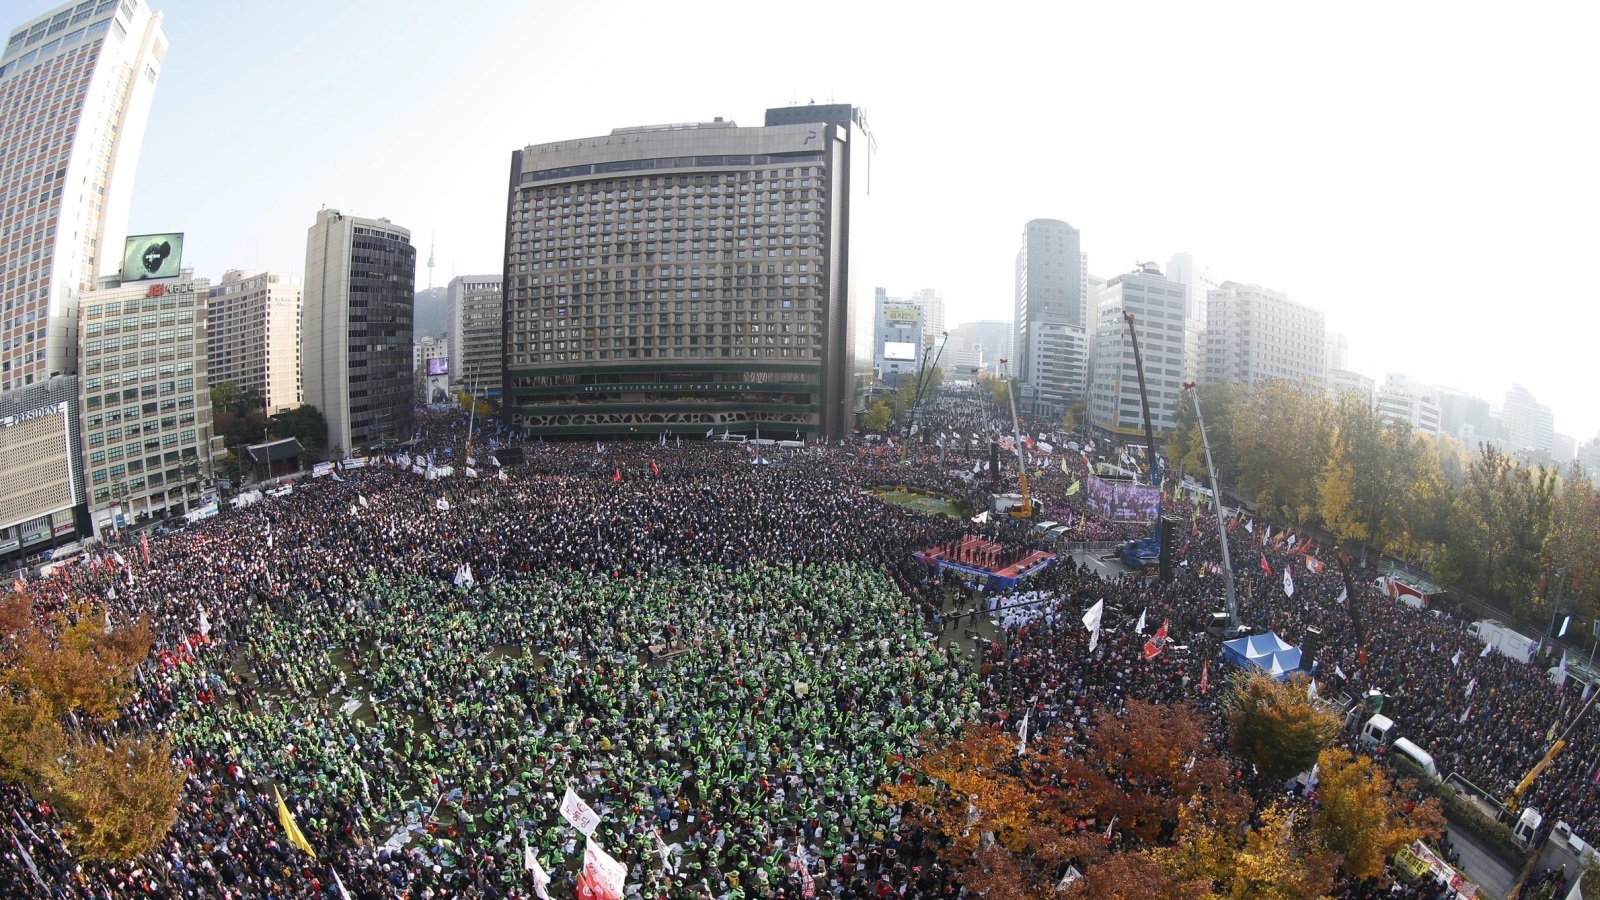 المشروفون على التظاهرة أكدوا خروج مليون شخص للمطالبة برحيل الرئيسة (الأوروبية)